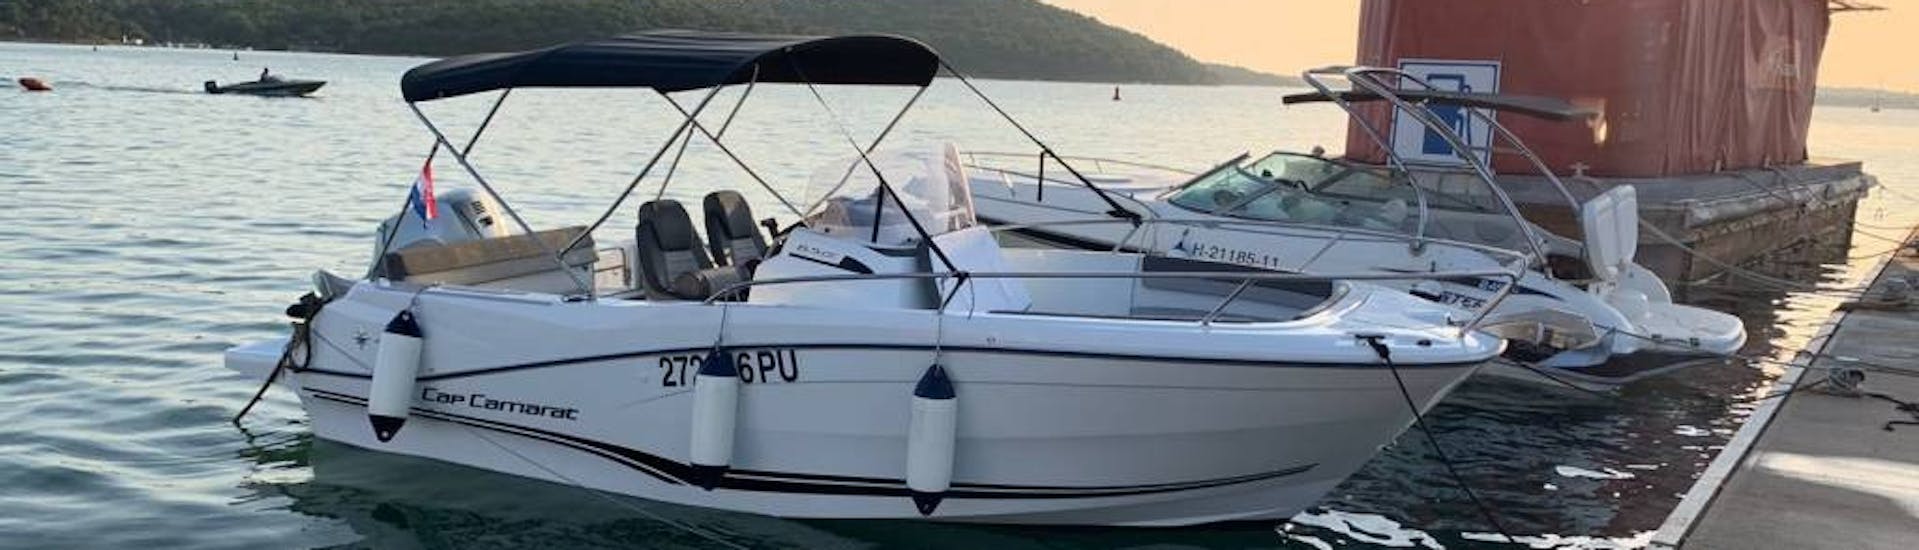 De motorboot in de haven bij zonsondergang gebruikt voor bootverhuur in Pula en Medulin met Zoom Boats Istria.